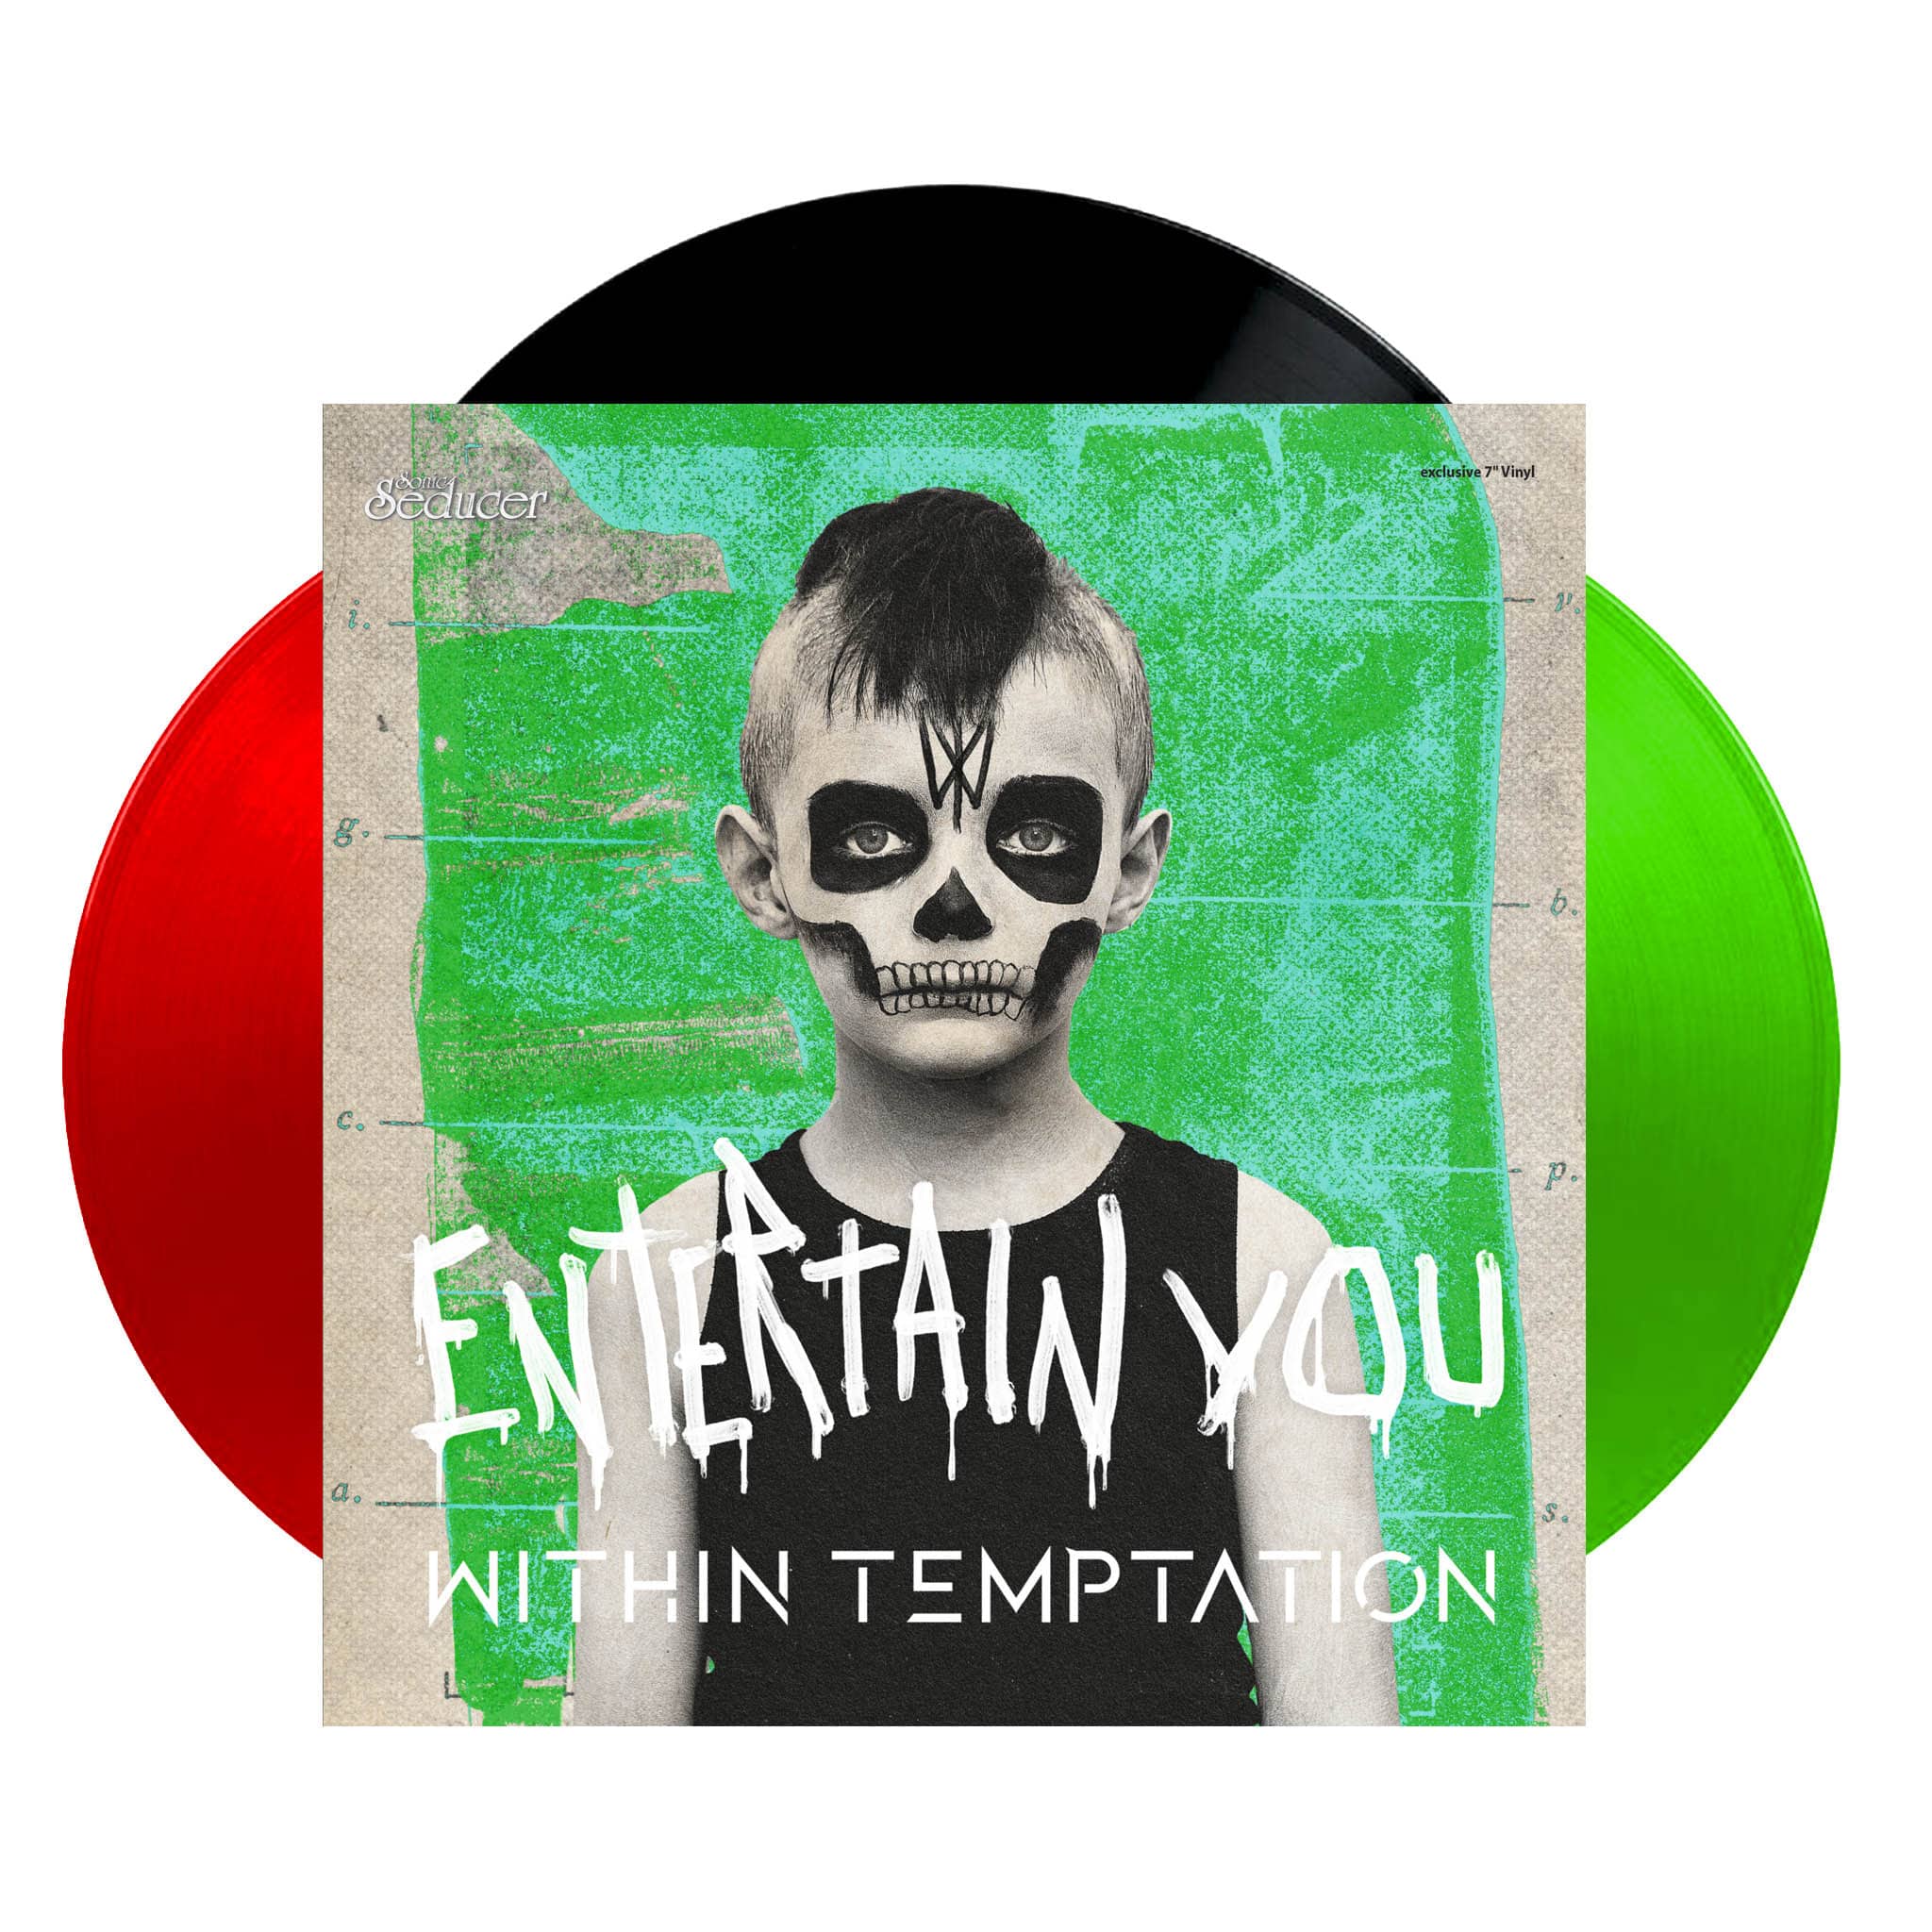 Videoklassiker: Within Temptation machen gemeinsame Sache mit Tarja Turunen @ Sonic Seducer